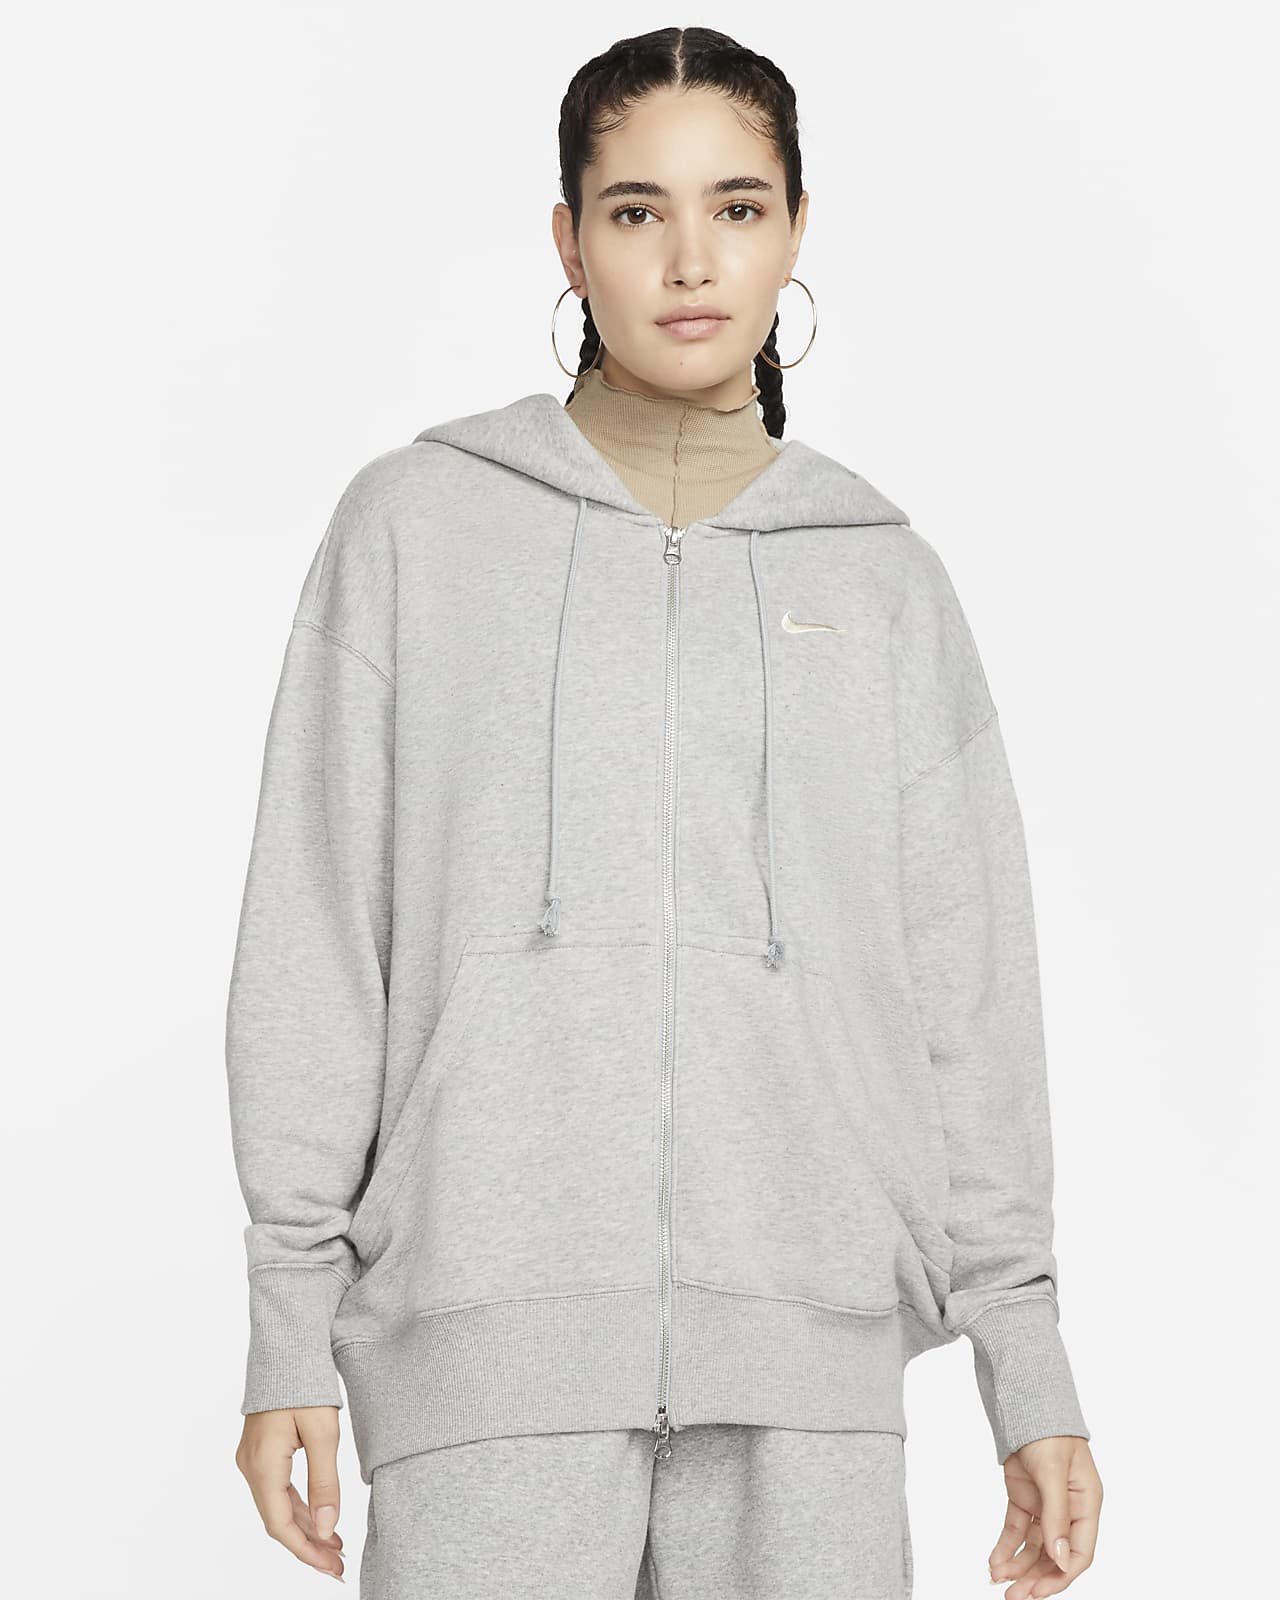 Nike Sportswear Phoenix Fleece Dessuadora amb caputxa i cremallera completa oversized - Dona